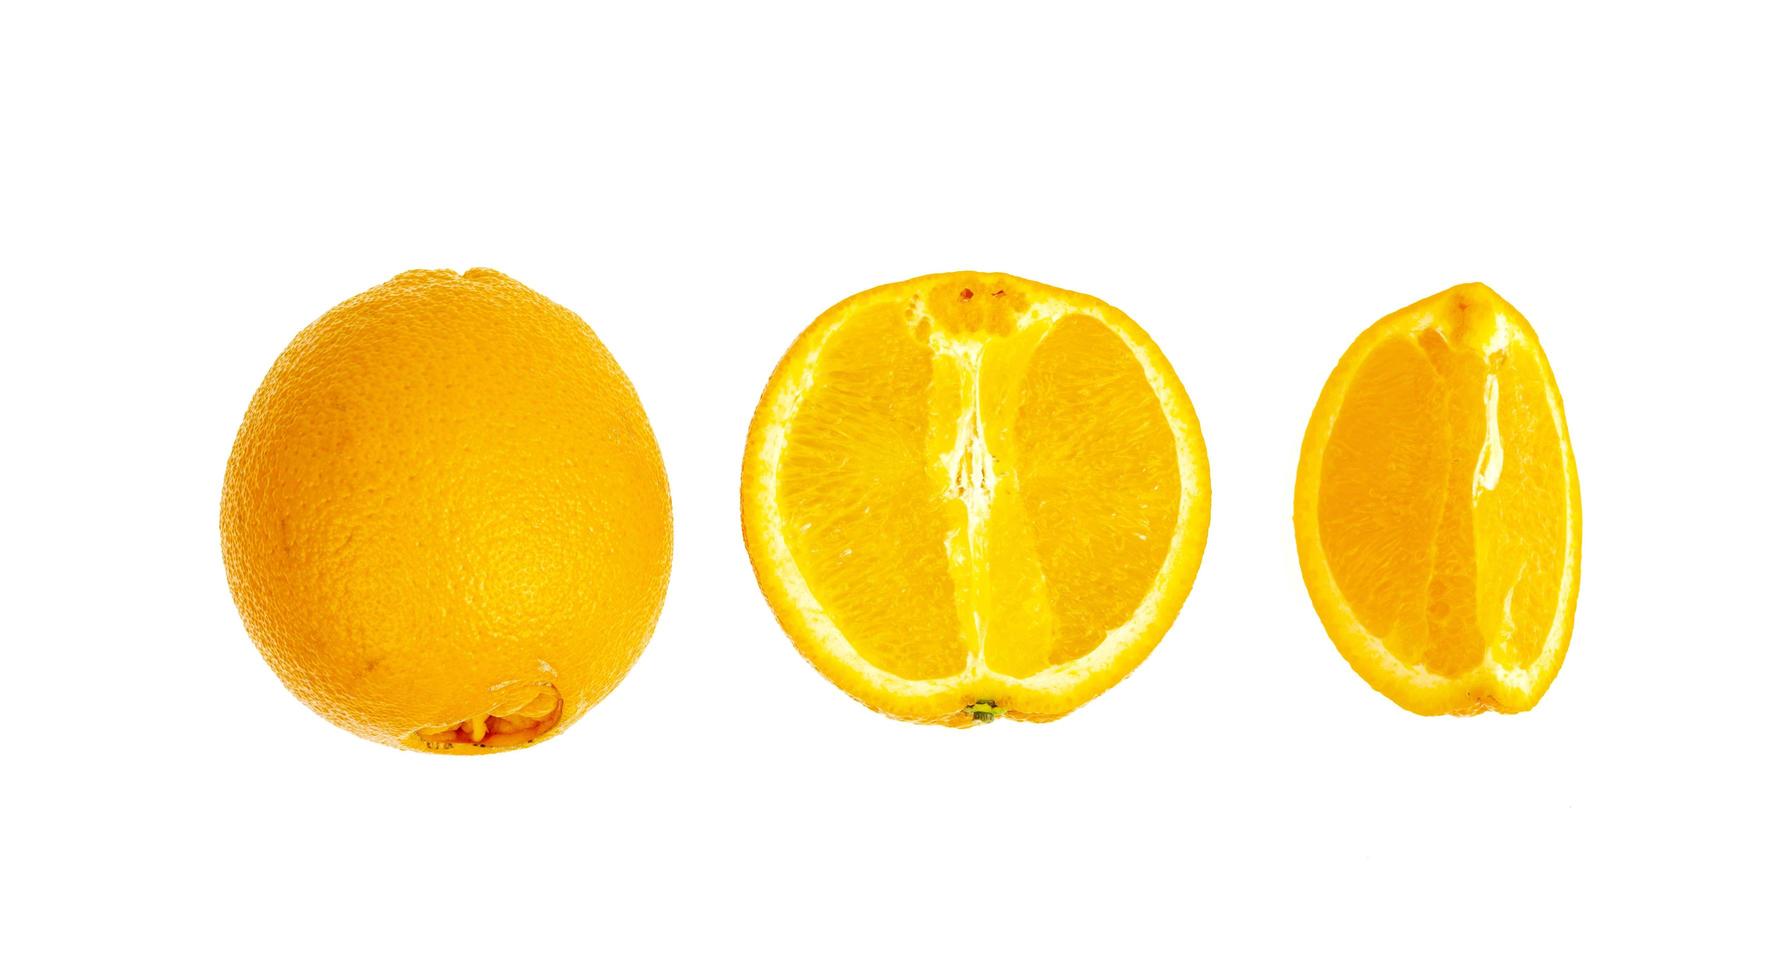 Several whole and sliced sweet orange oranges isolated on white background. photo